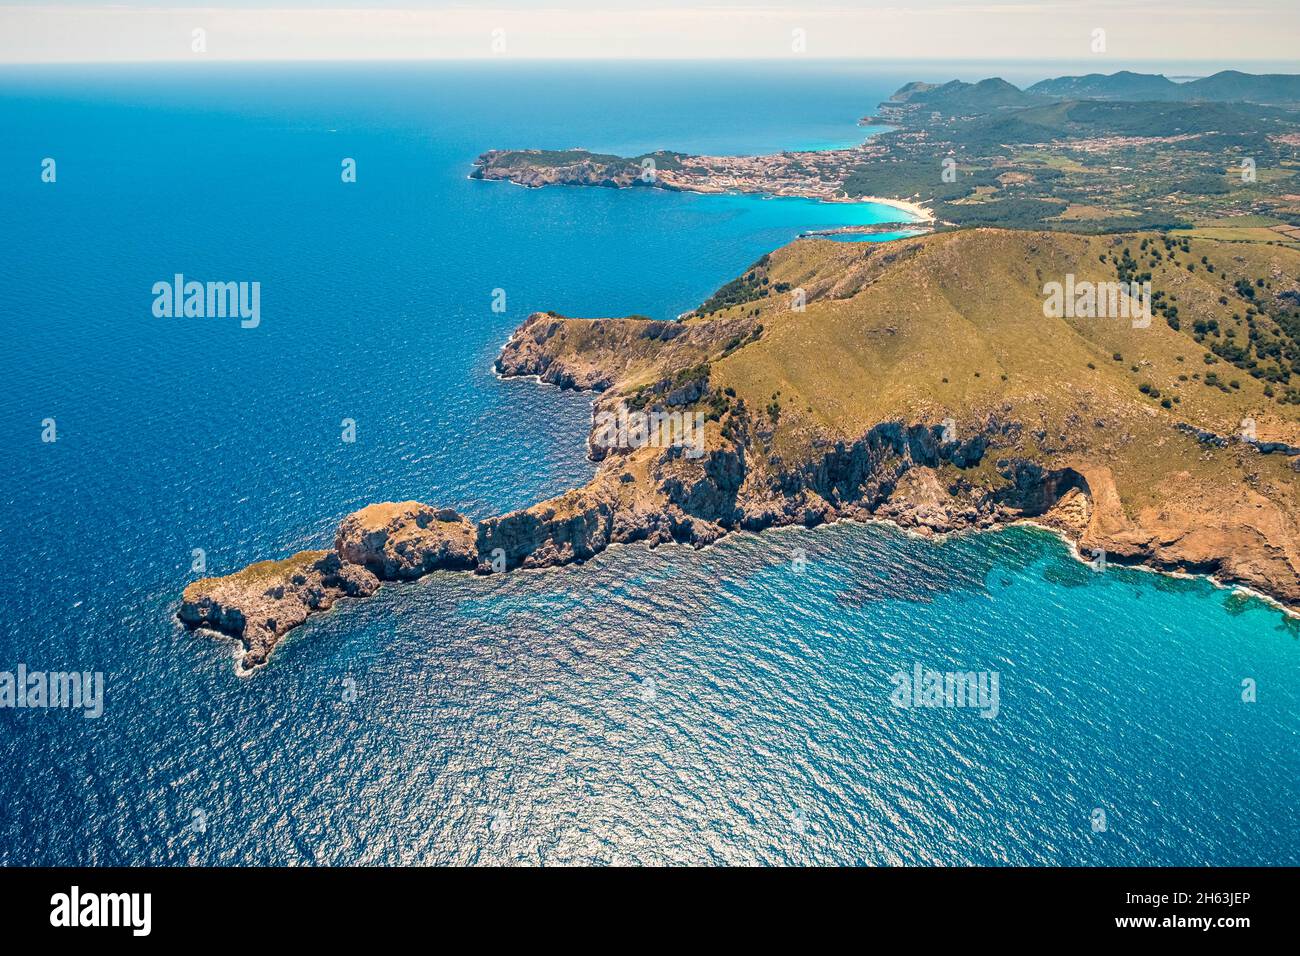 vista aerea,cap des freu,isole baleari,capdepera,mallorca,spagna Foto Stock